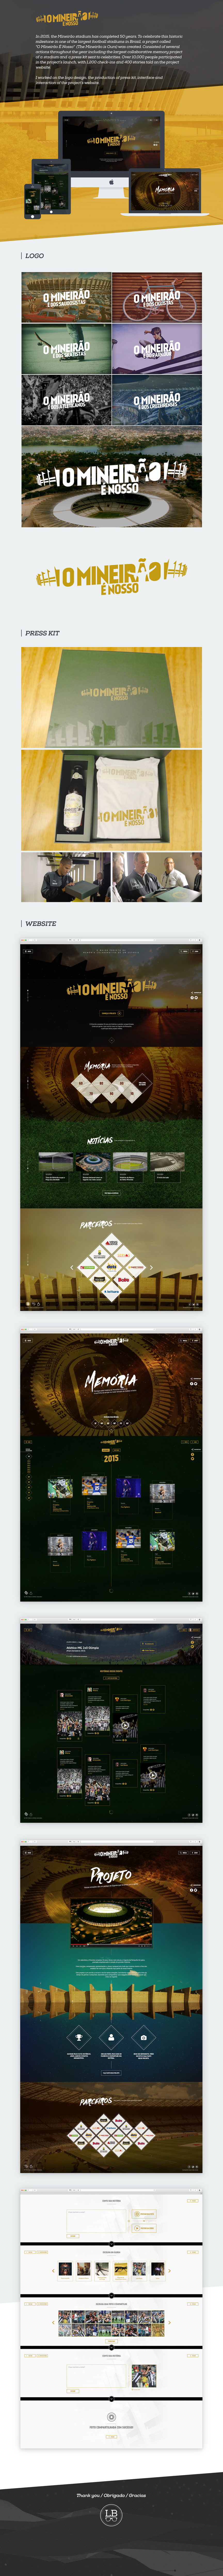 art direction  UI/UX Design Web Design  Mineirão futebol Esporte 50 anos estadio Responsive Design memoria